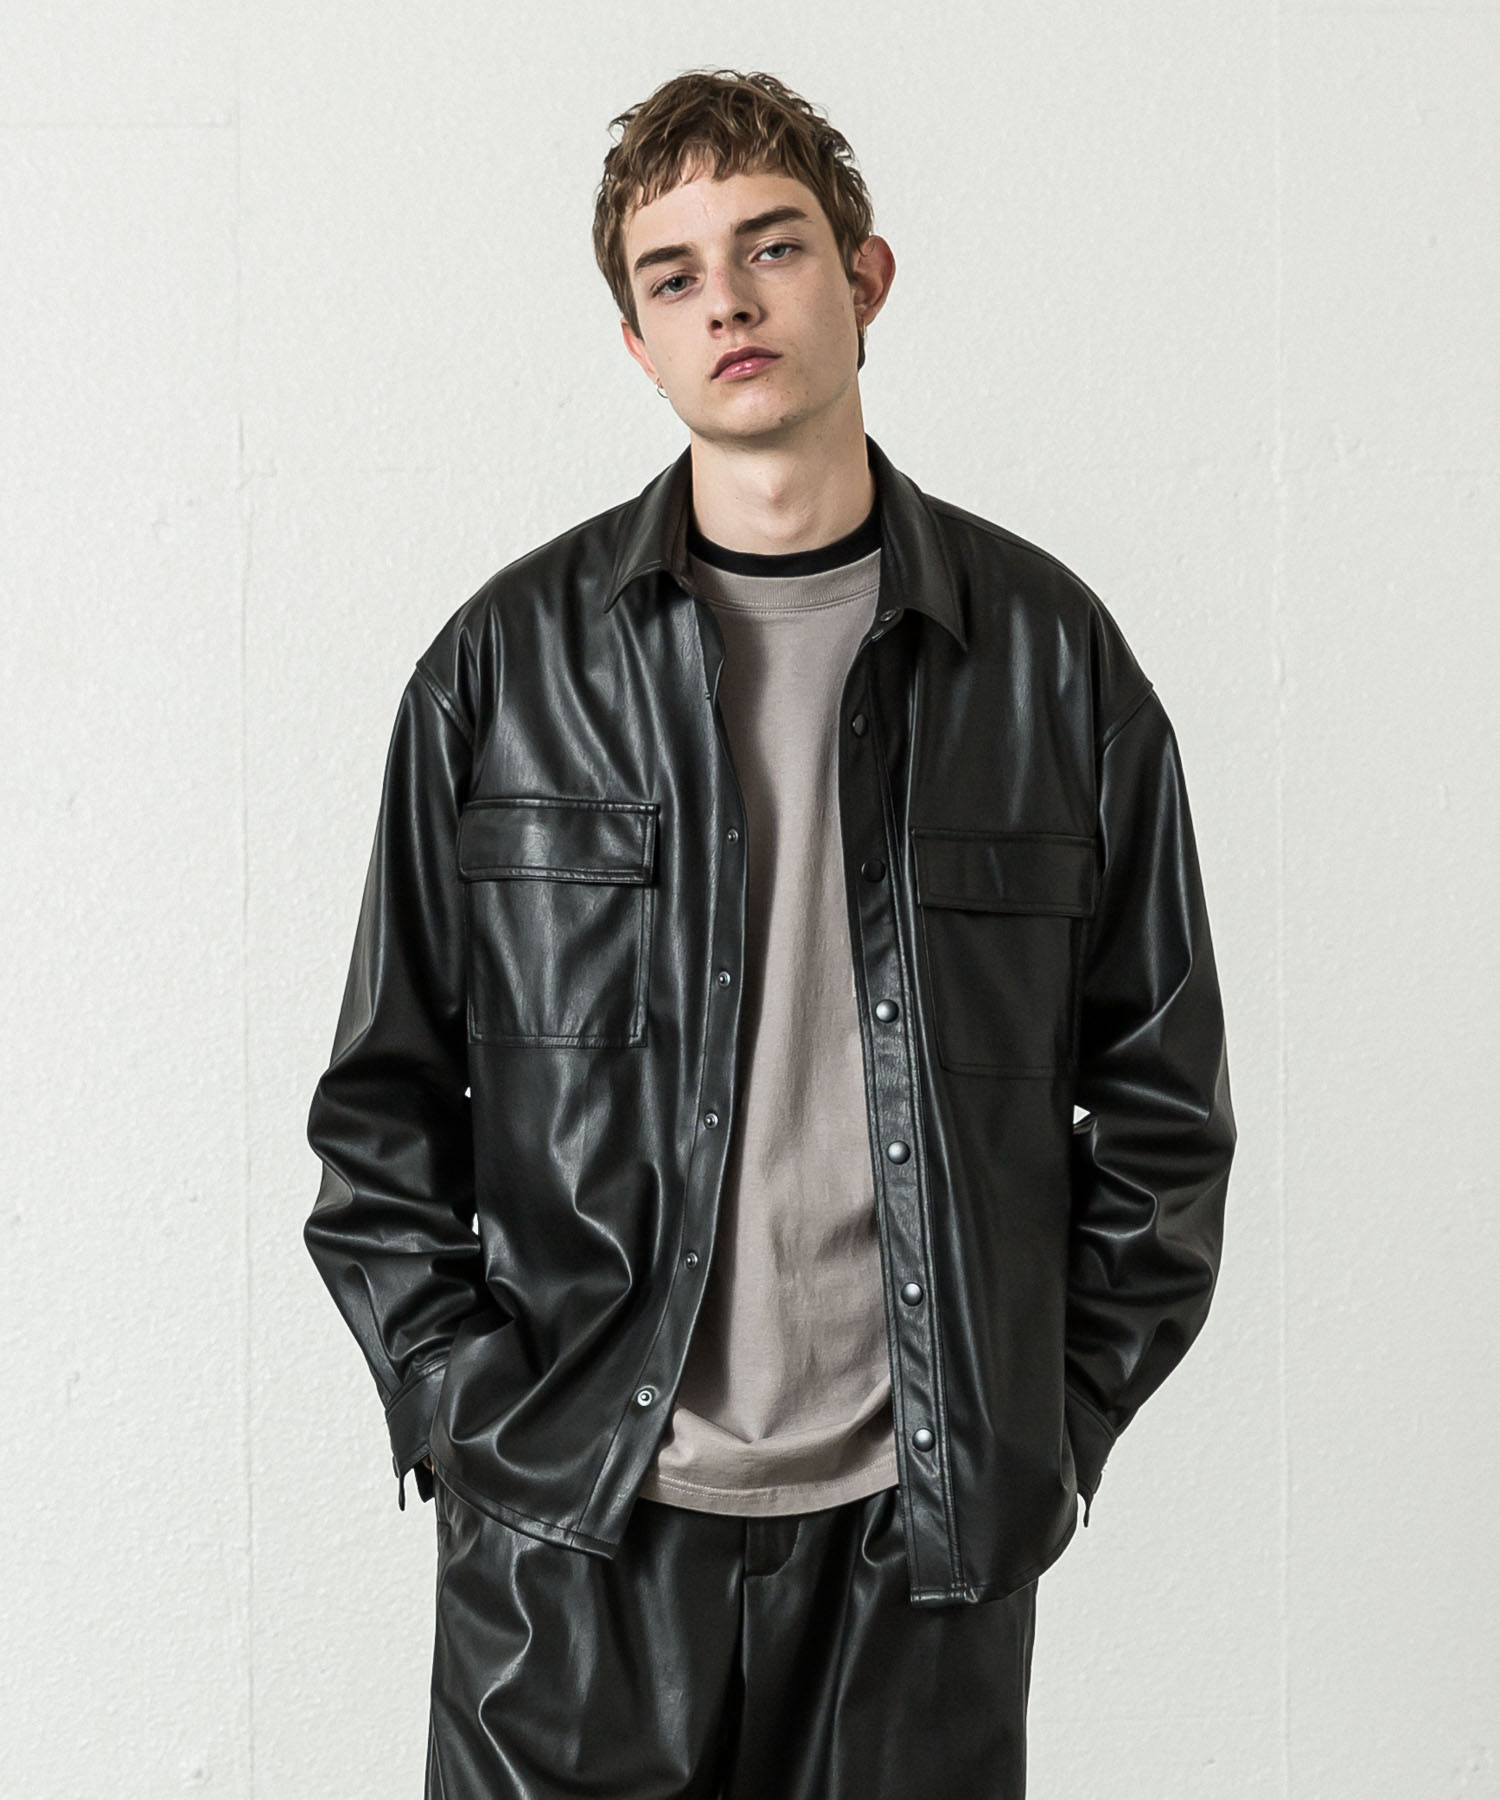 Eco Leather Double Pocket Shirt Jacket - BLACK